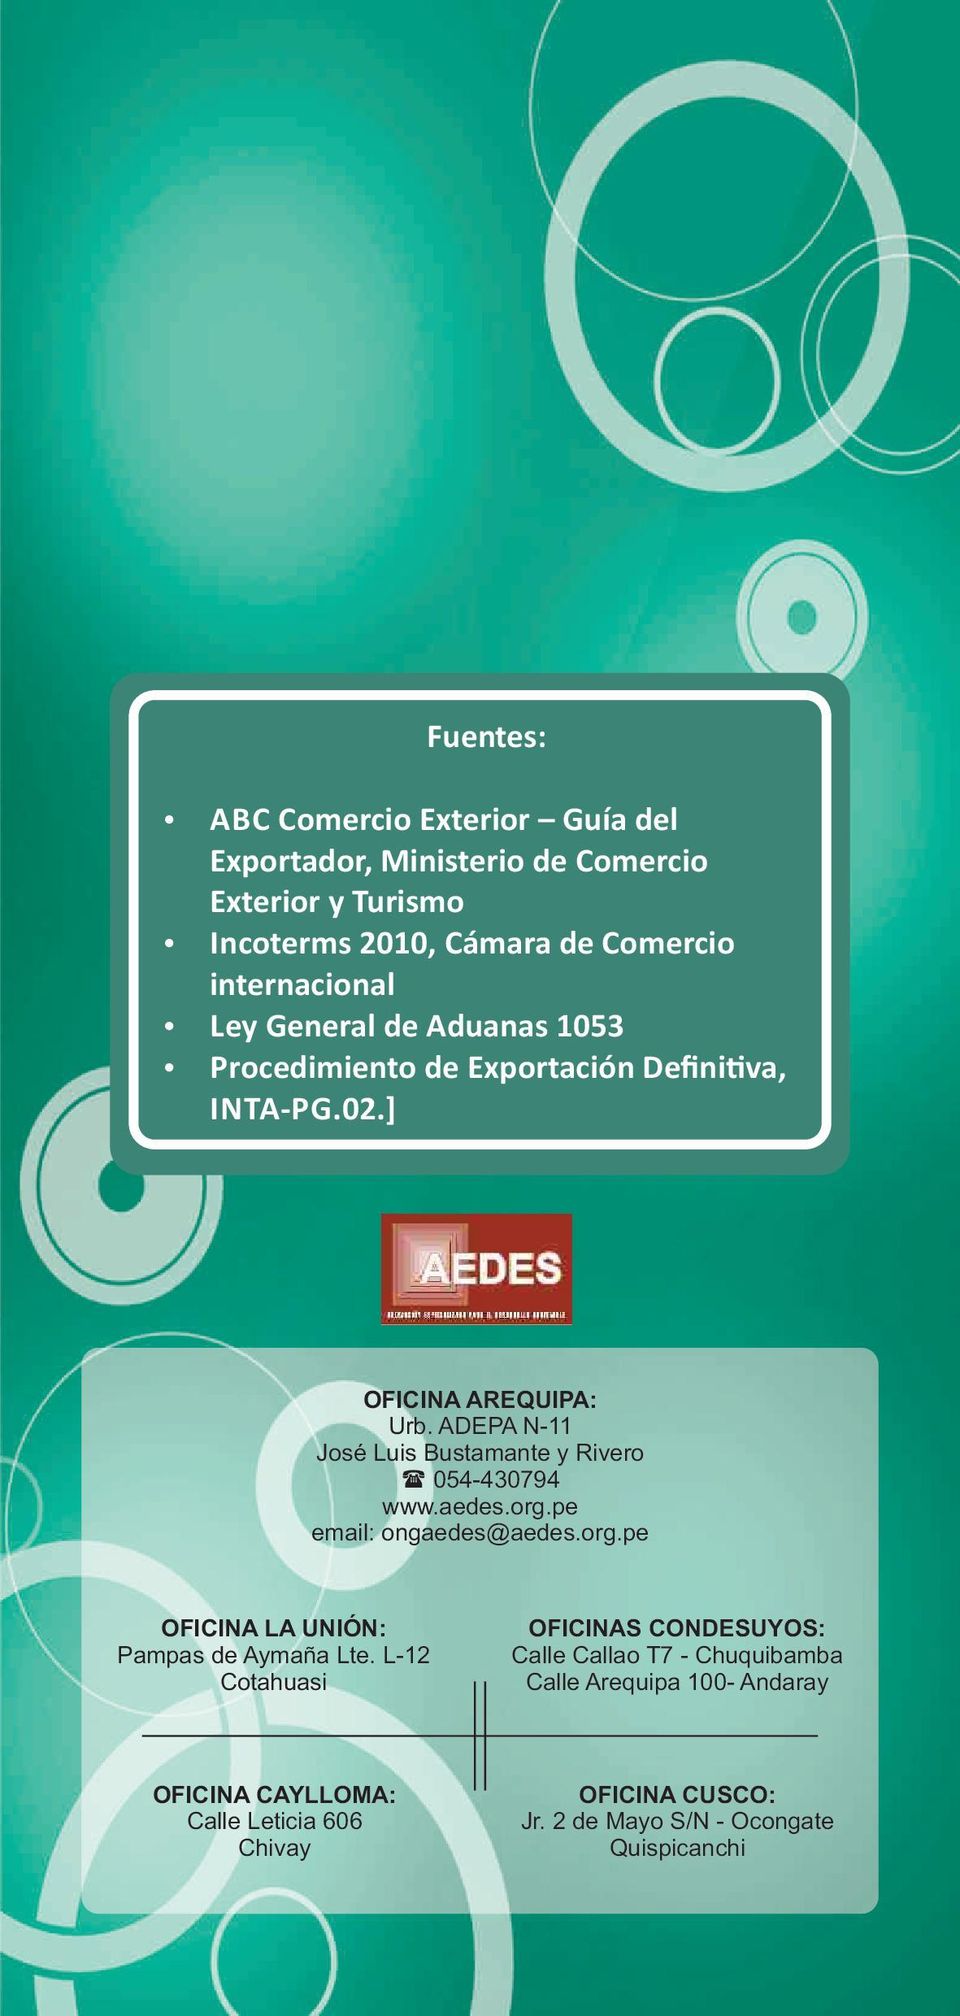 ADEPA N-11 José Luis Bustamante y Rivero 054-430794 www.aedes.org.pe email: ongaedes@aedes.org.pe OFICINA LA UNIÓN: Pampas de Aymaña Lte.